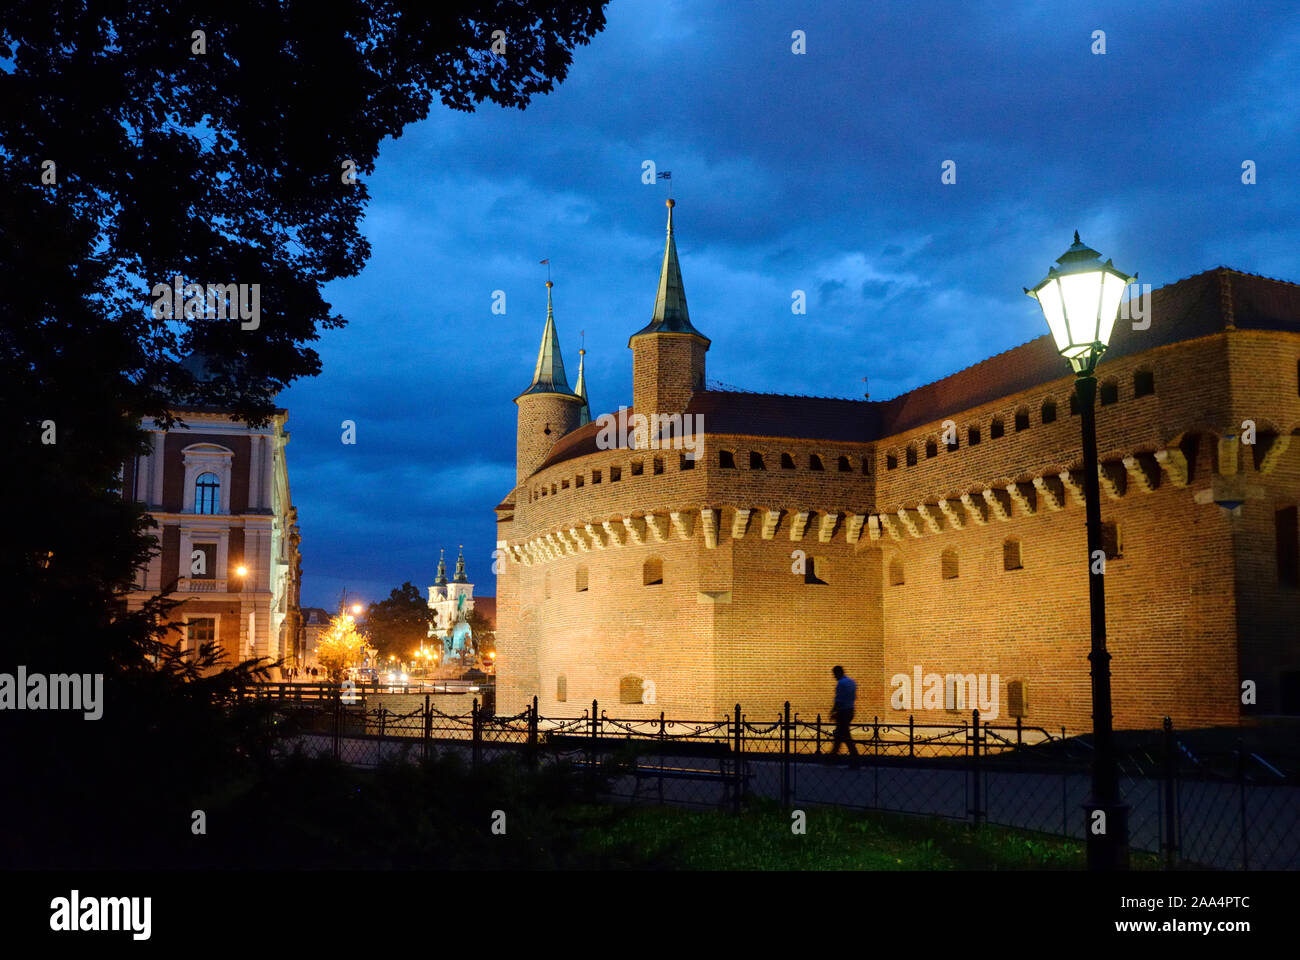 Le barbican de style gothique de Cracovie, datant de 1498, est l'un des rares à survivre en Europe. Site du patrimoine mondial de l'UNESCO, Cracovie, Pologne Banque D'Images